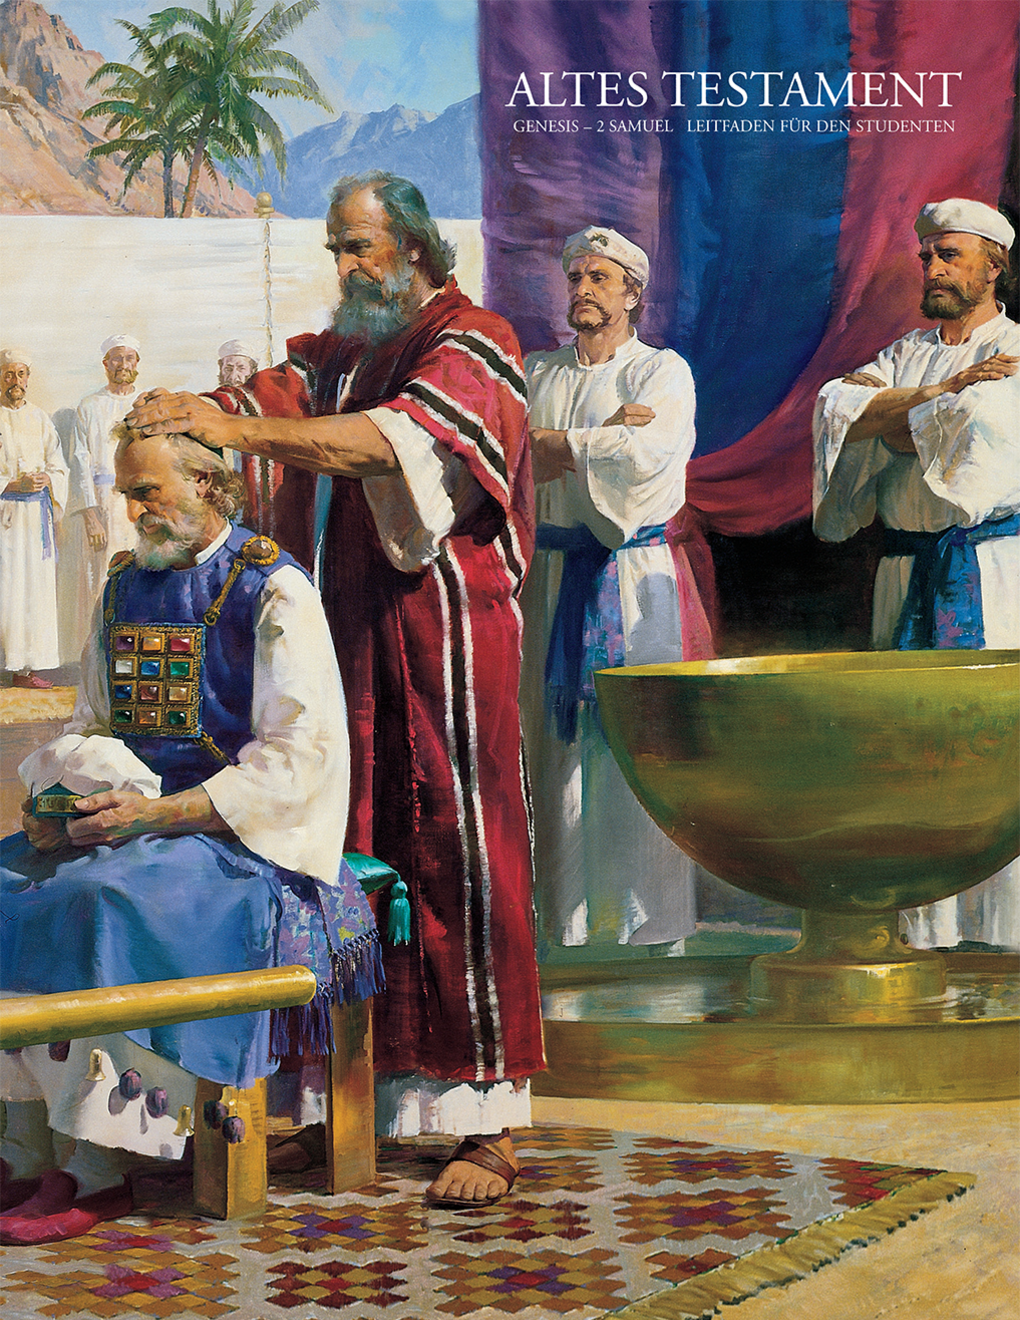 Altes Testament – Leitfaden für den Studenten: Genesis – 2 Samuel (Religion 301)